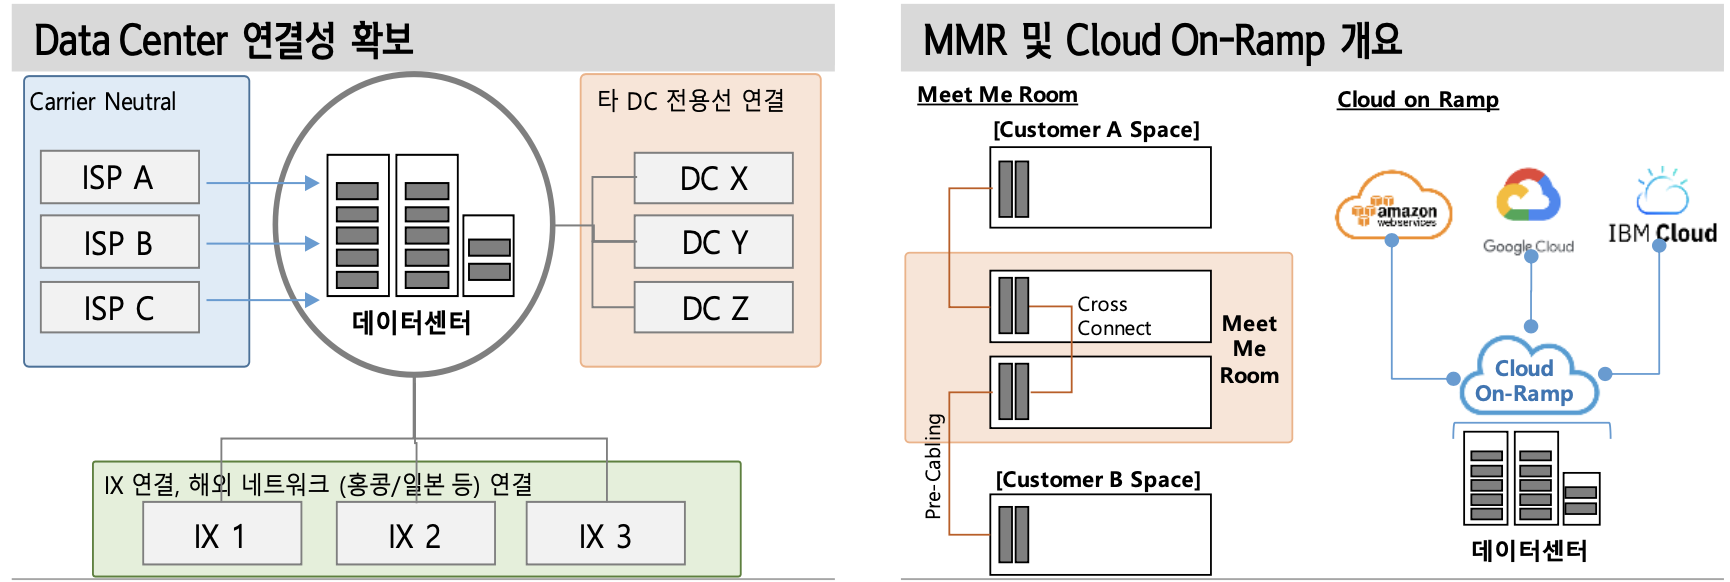 Data Center 연결성 확보 / MMR 및 Cloud On-Ramp 개요